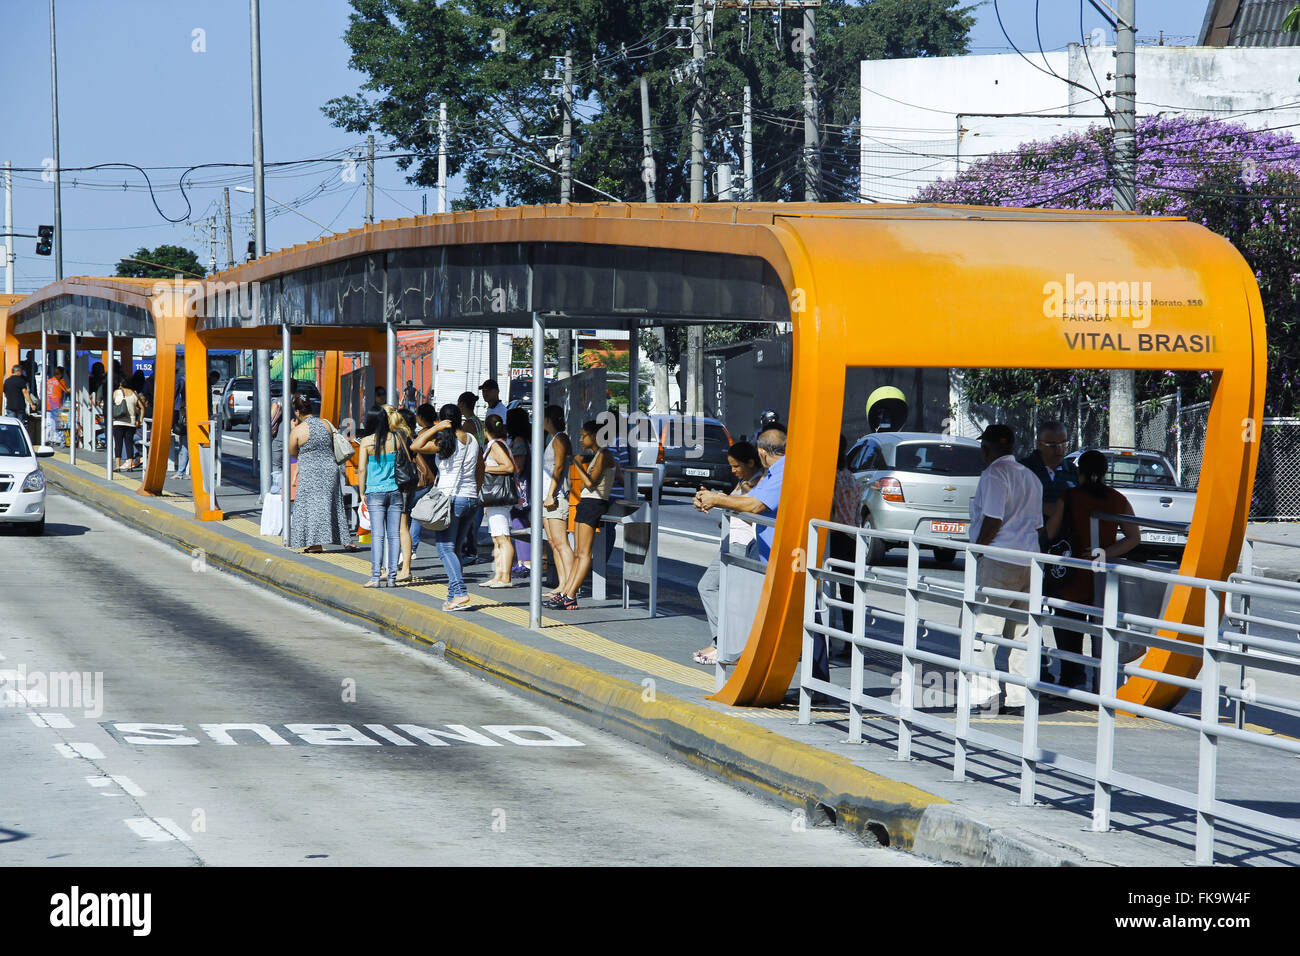 Bus stop on exclusive busway on Avenida Professor Francisco Morato